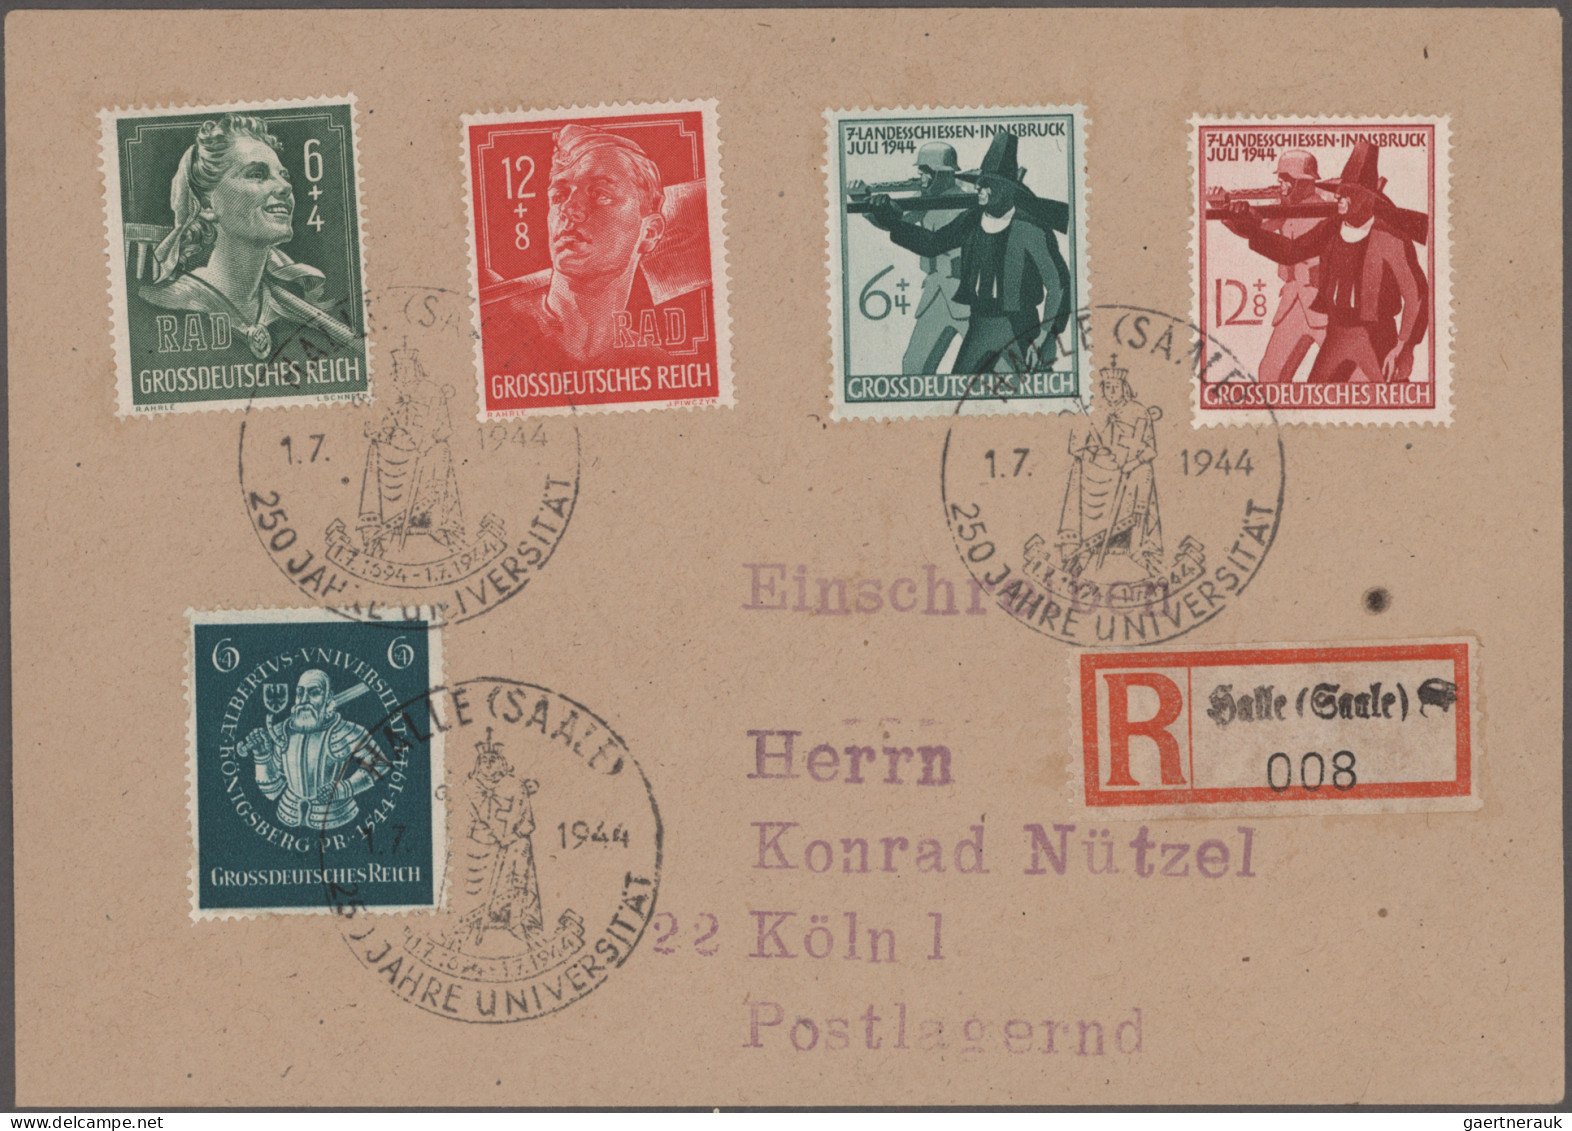 Deutsches Reich - 3. Reich: 1933/1944, saubere Sammlung von 31 Ersttagsbriefen m